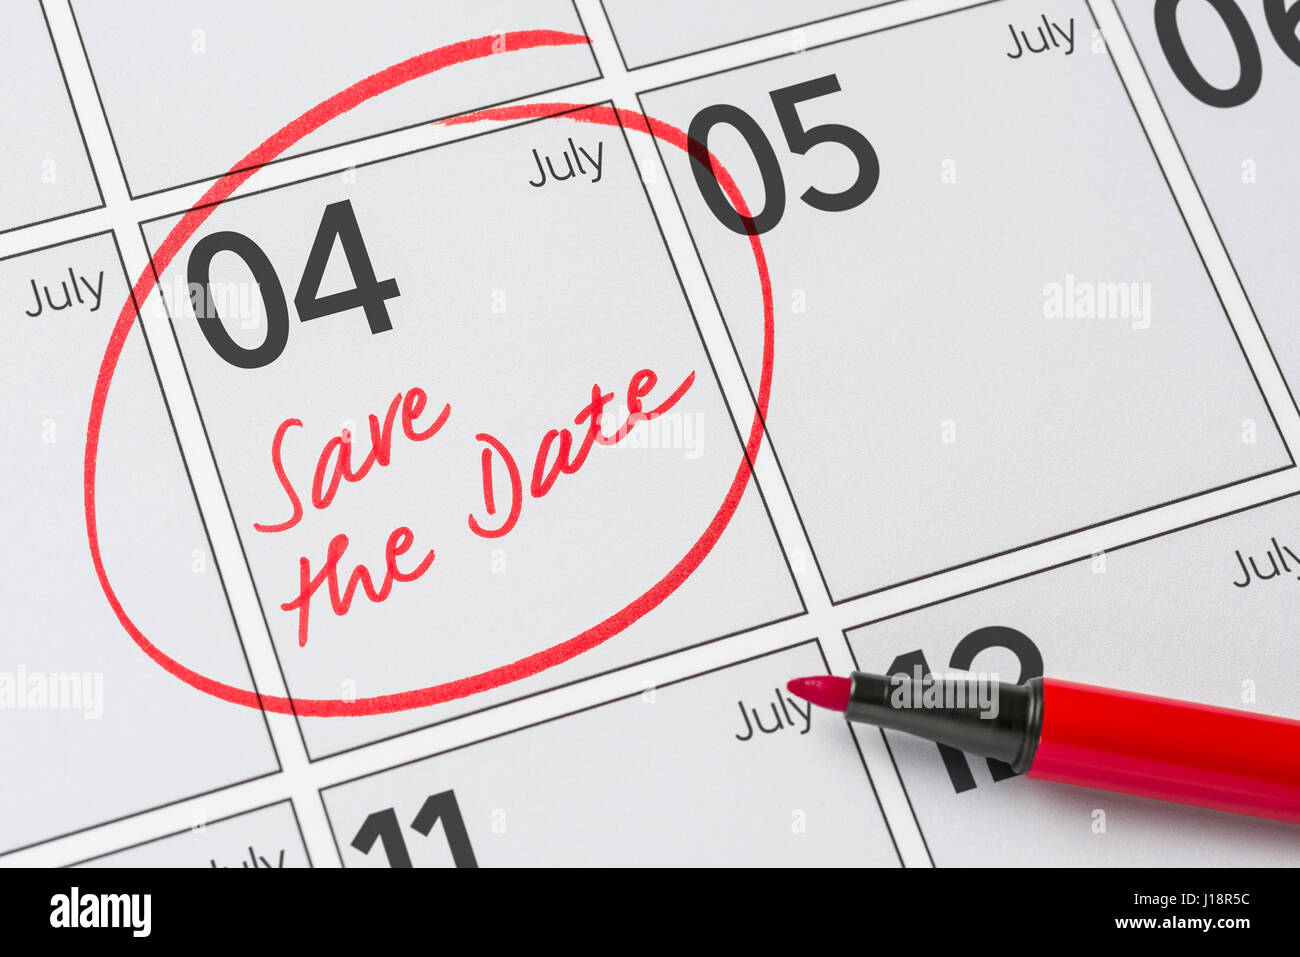 Enregistrer la date inscrite sur un calendrier - Juillet 04 Banque D'Images